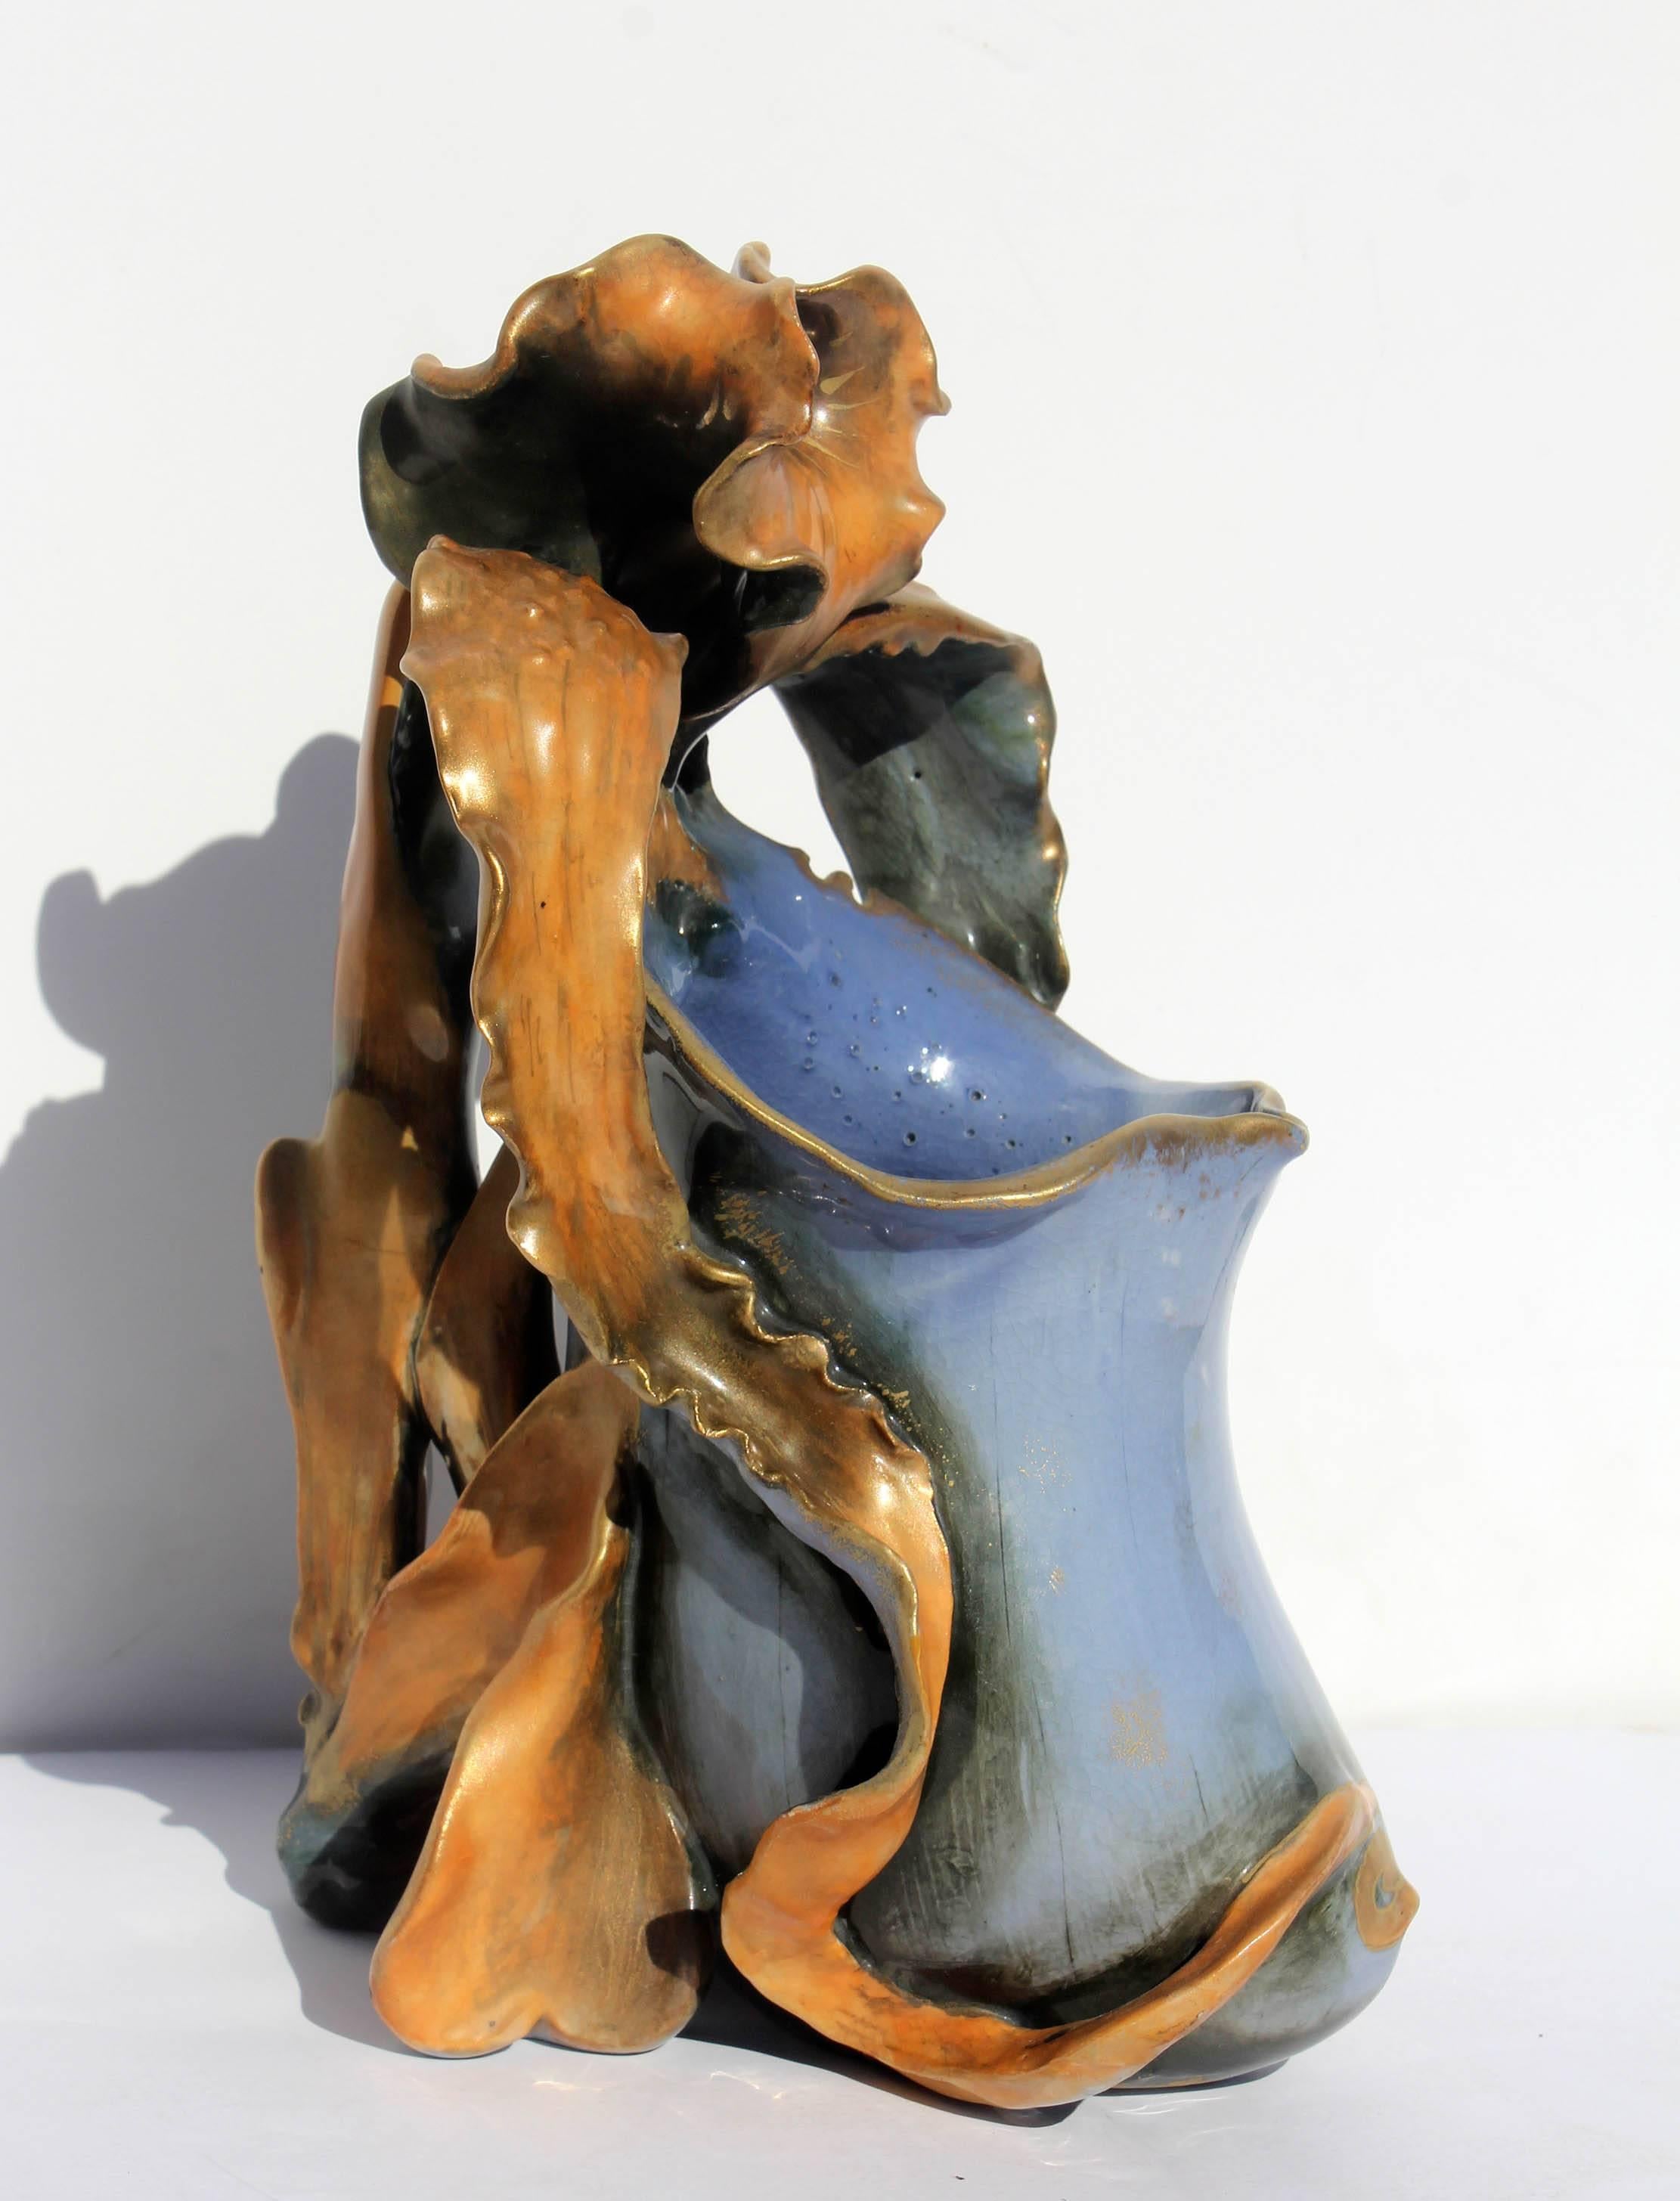 Antique Art Nouveau bearded iris vase. Hand-painted ceramic vase. Amphora made in Austria, late 19th century.